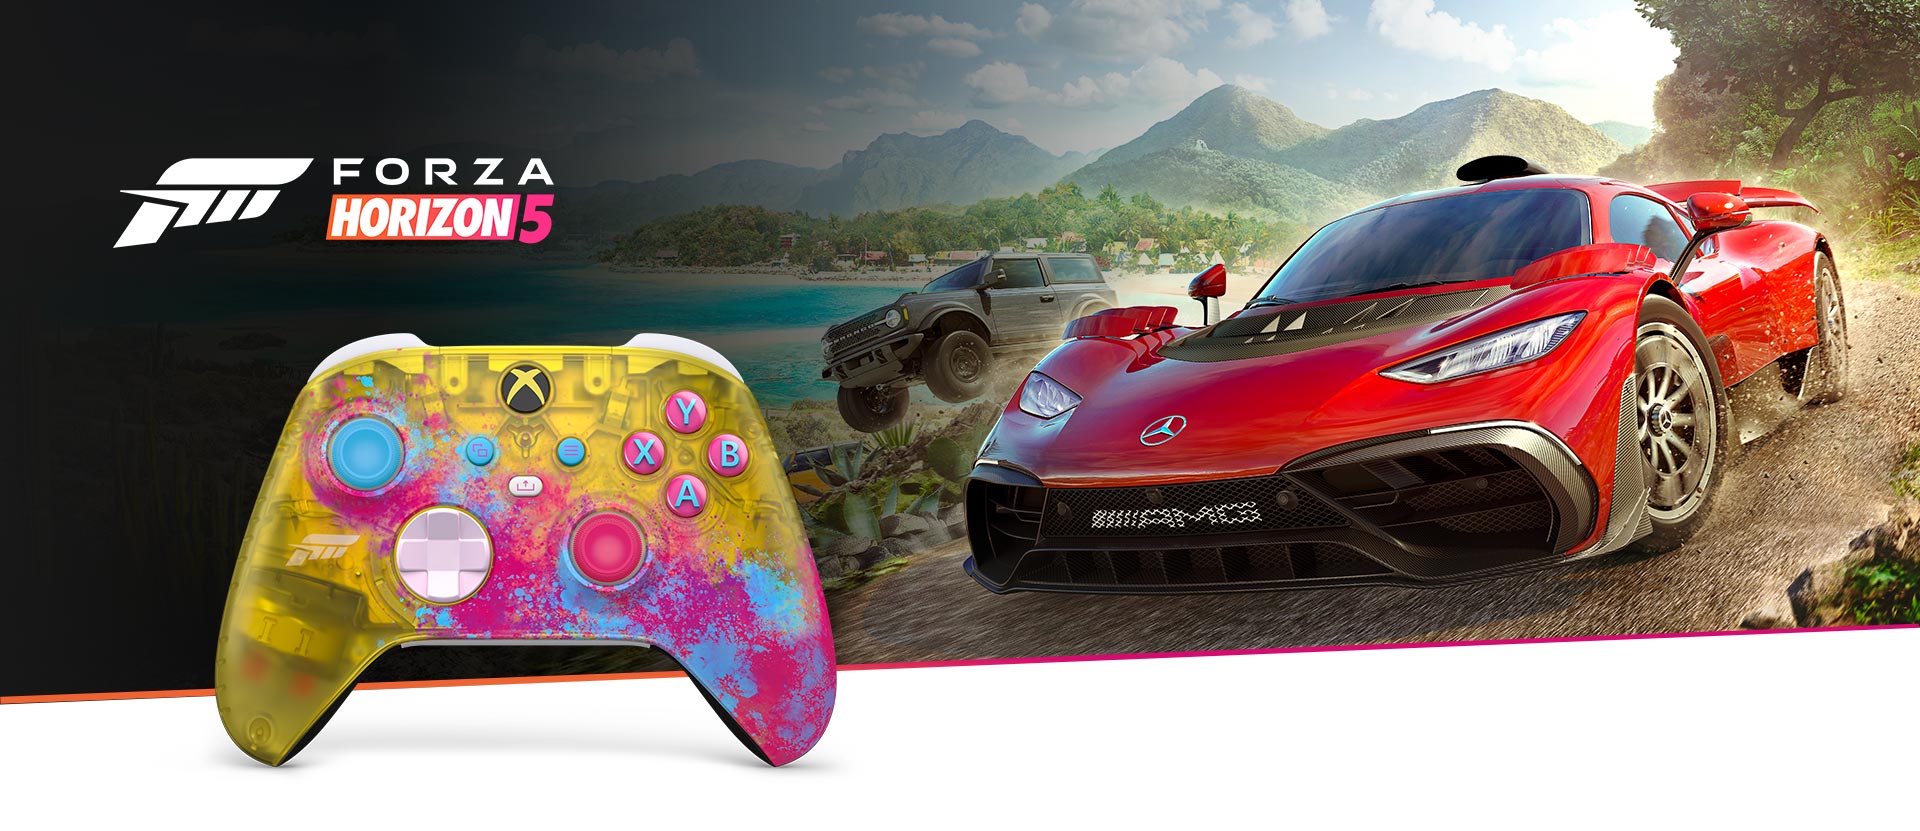  Крупный план передней части беспроводного геймпада Xbox Forza Horizon 5